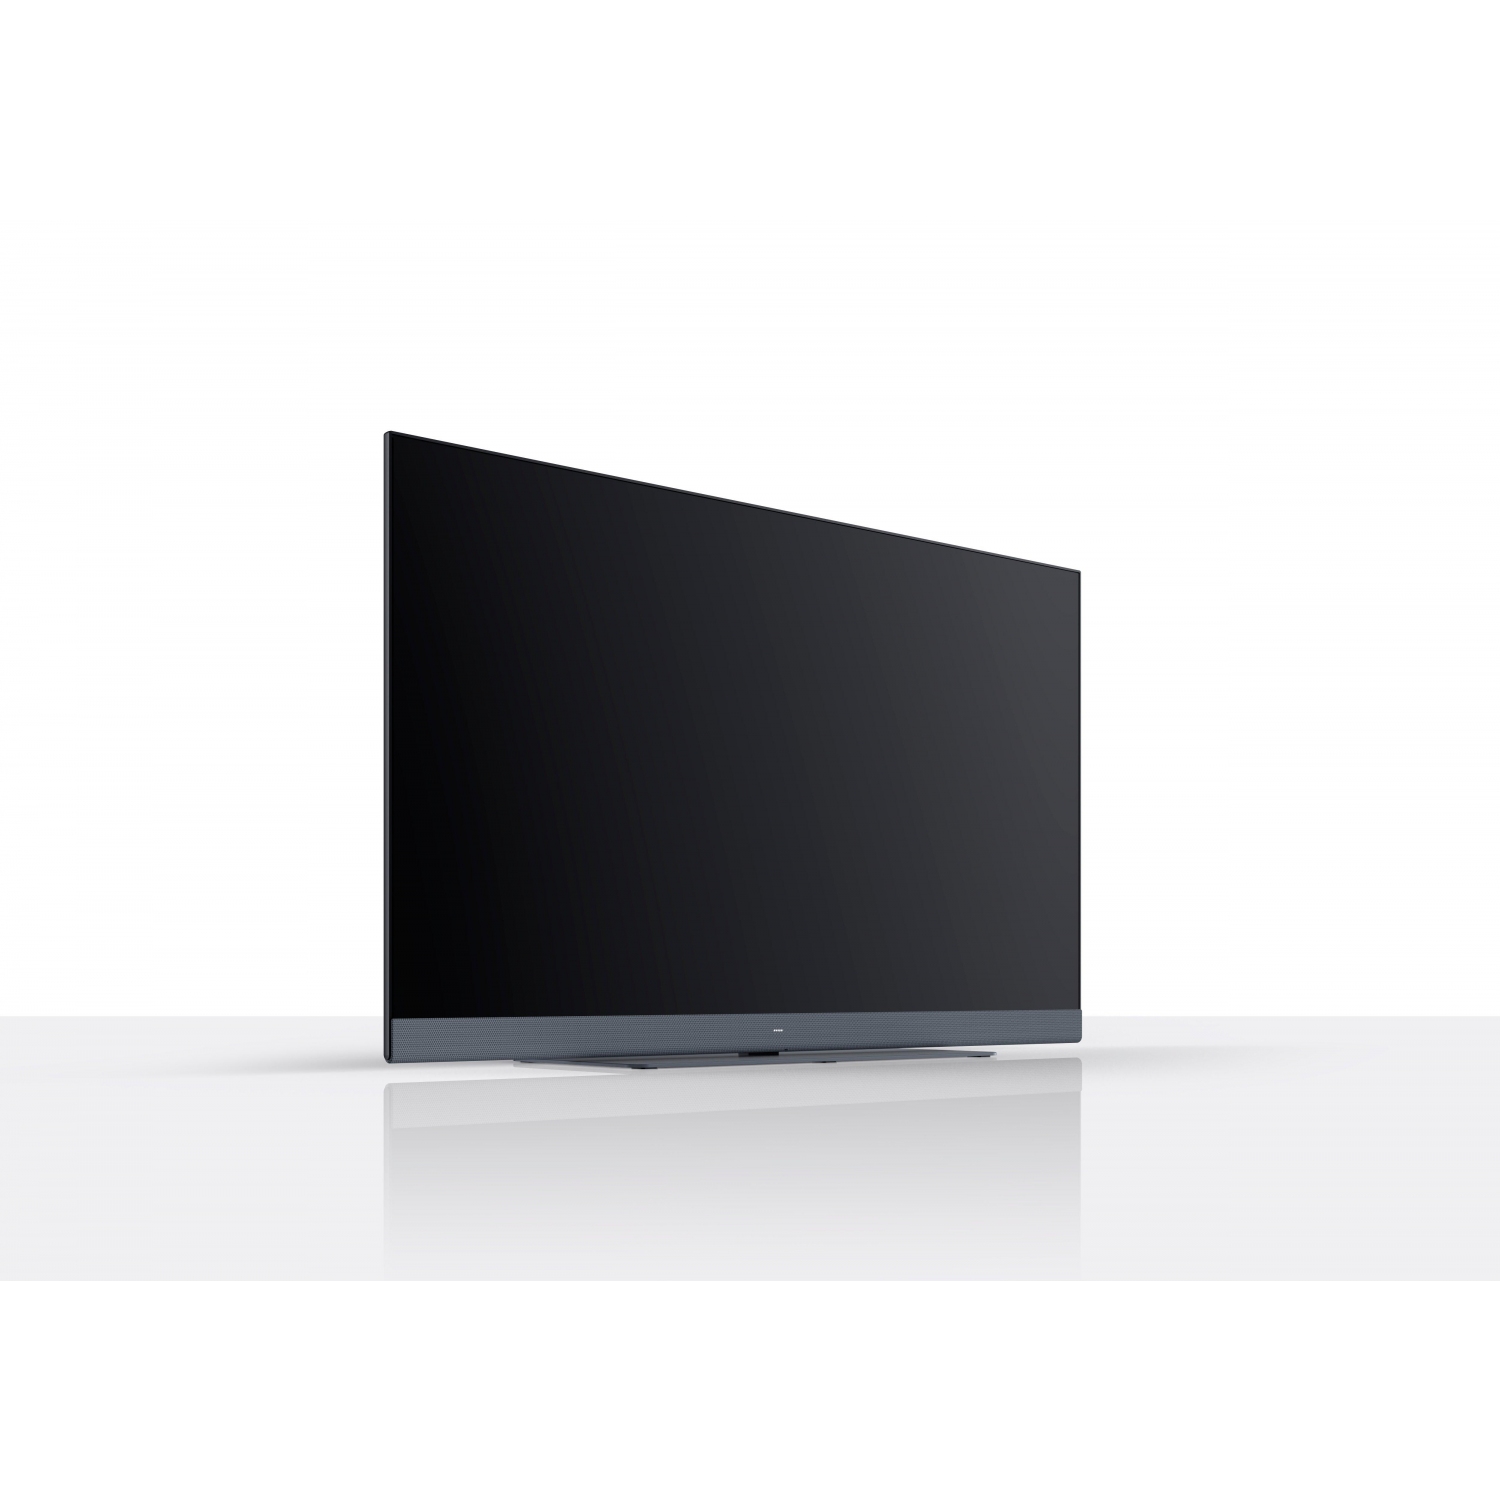 Loewe WESEE50SG 50" LCD Smart TV - Storm Grey - 3